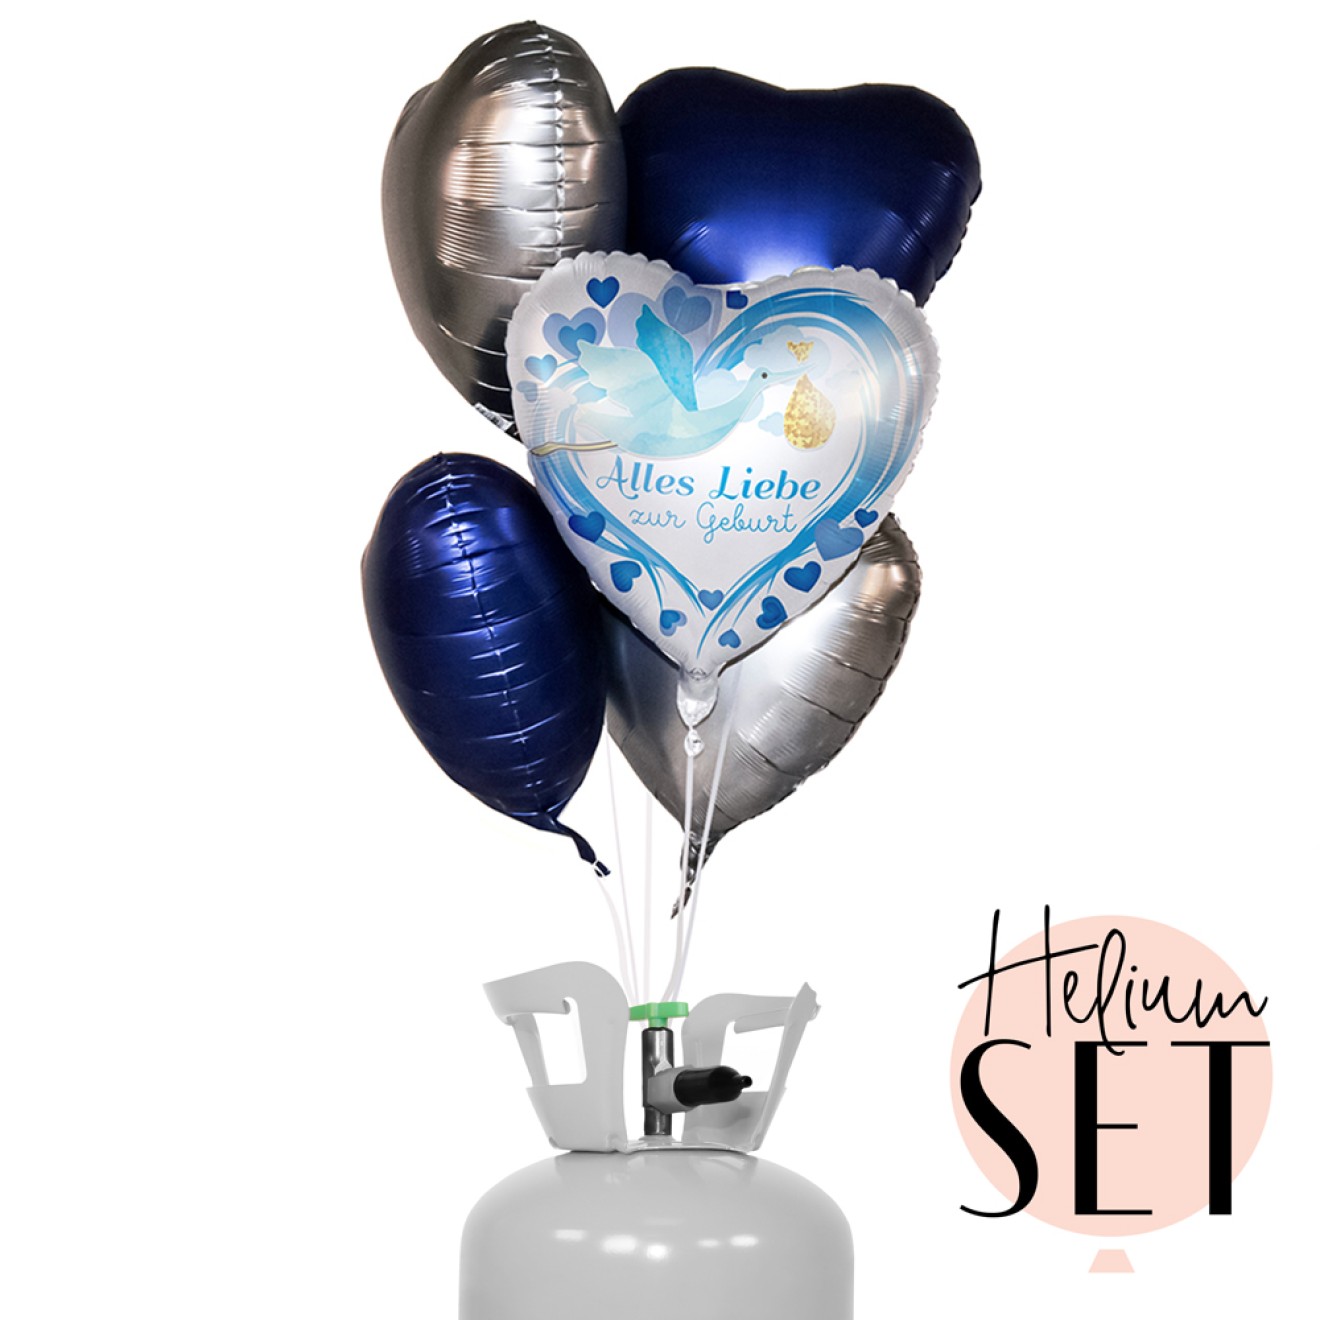 Helium Set - Alles Liebe zur Geburt Blau